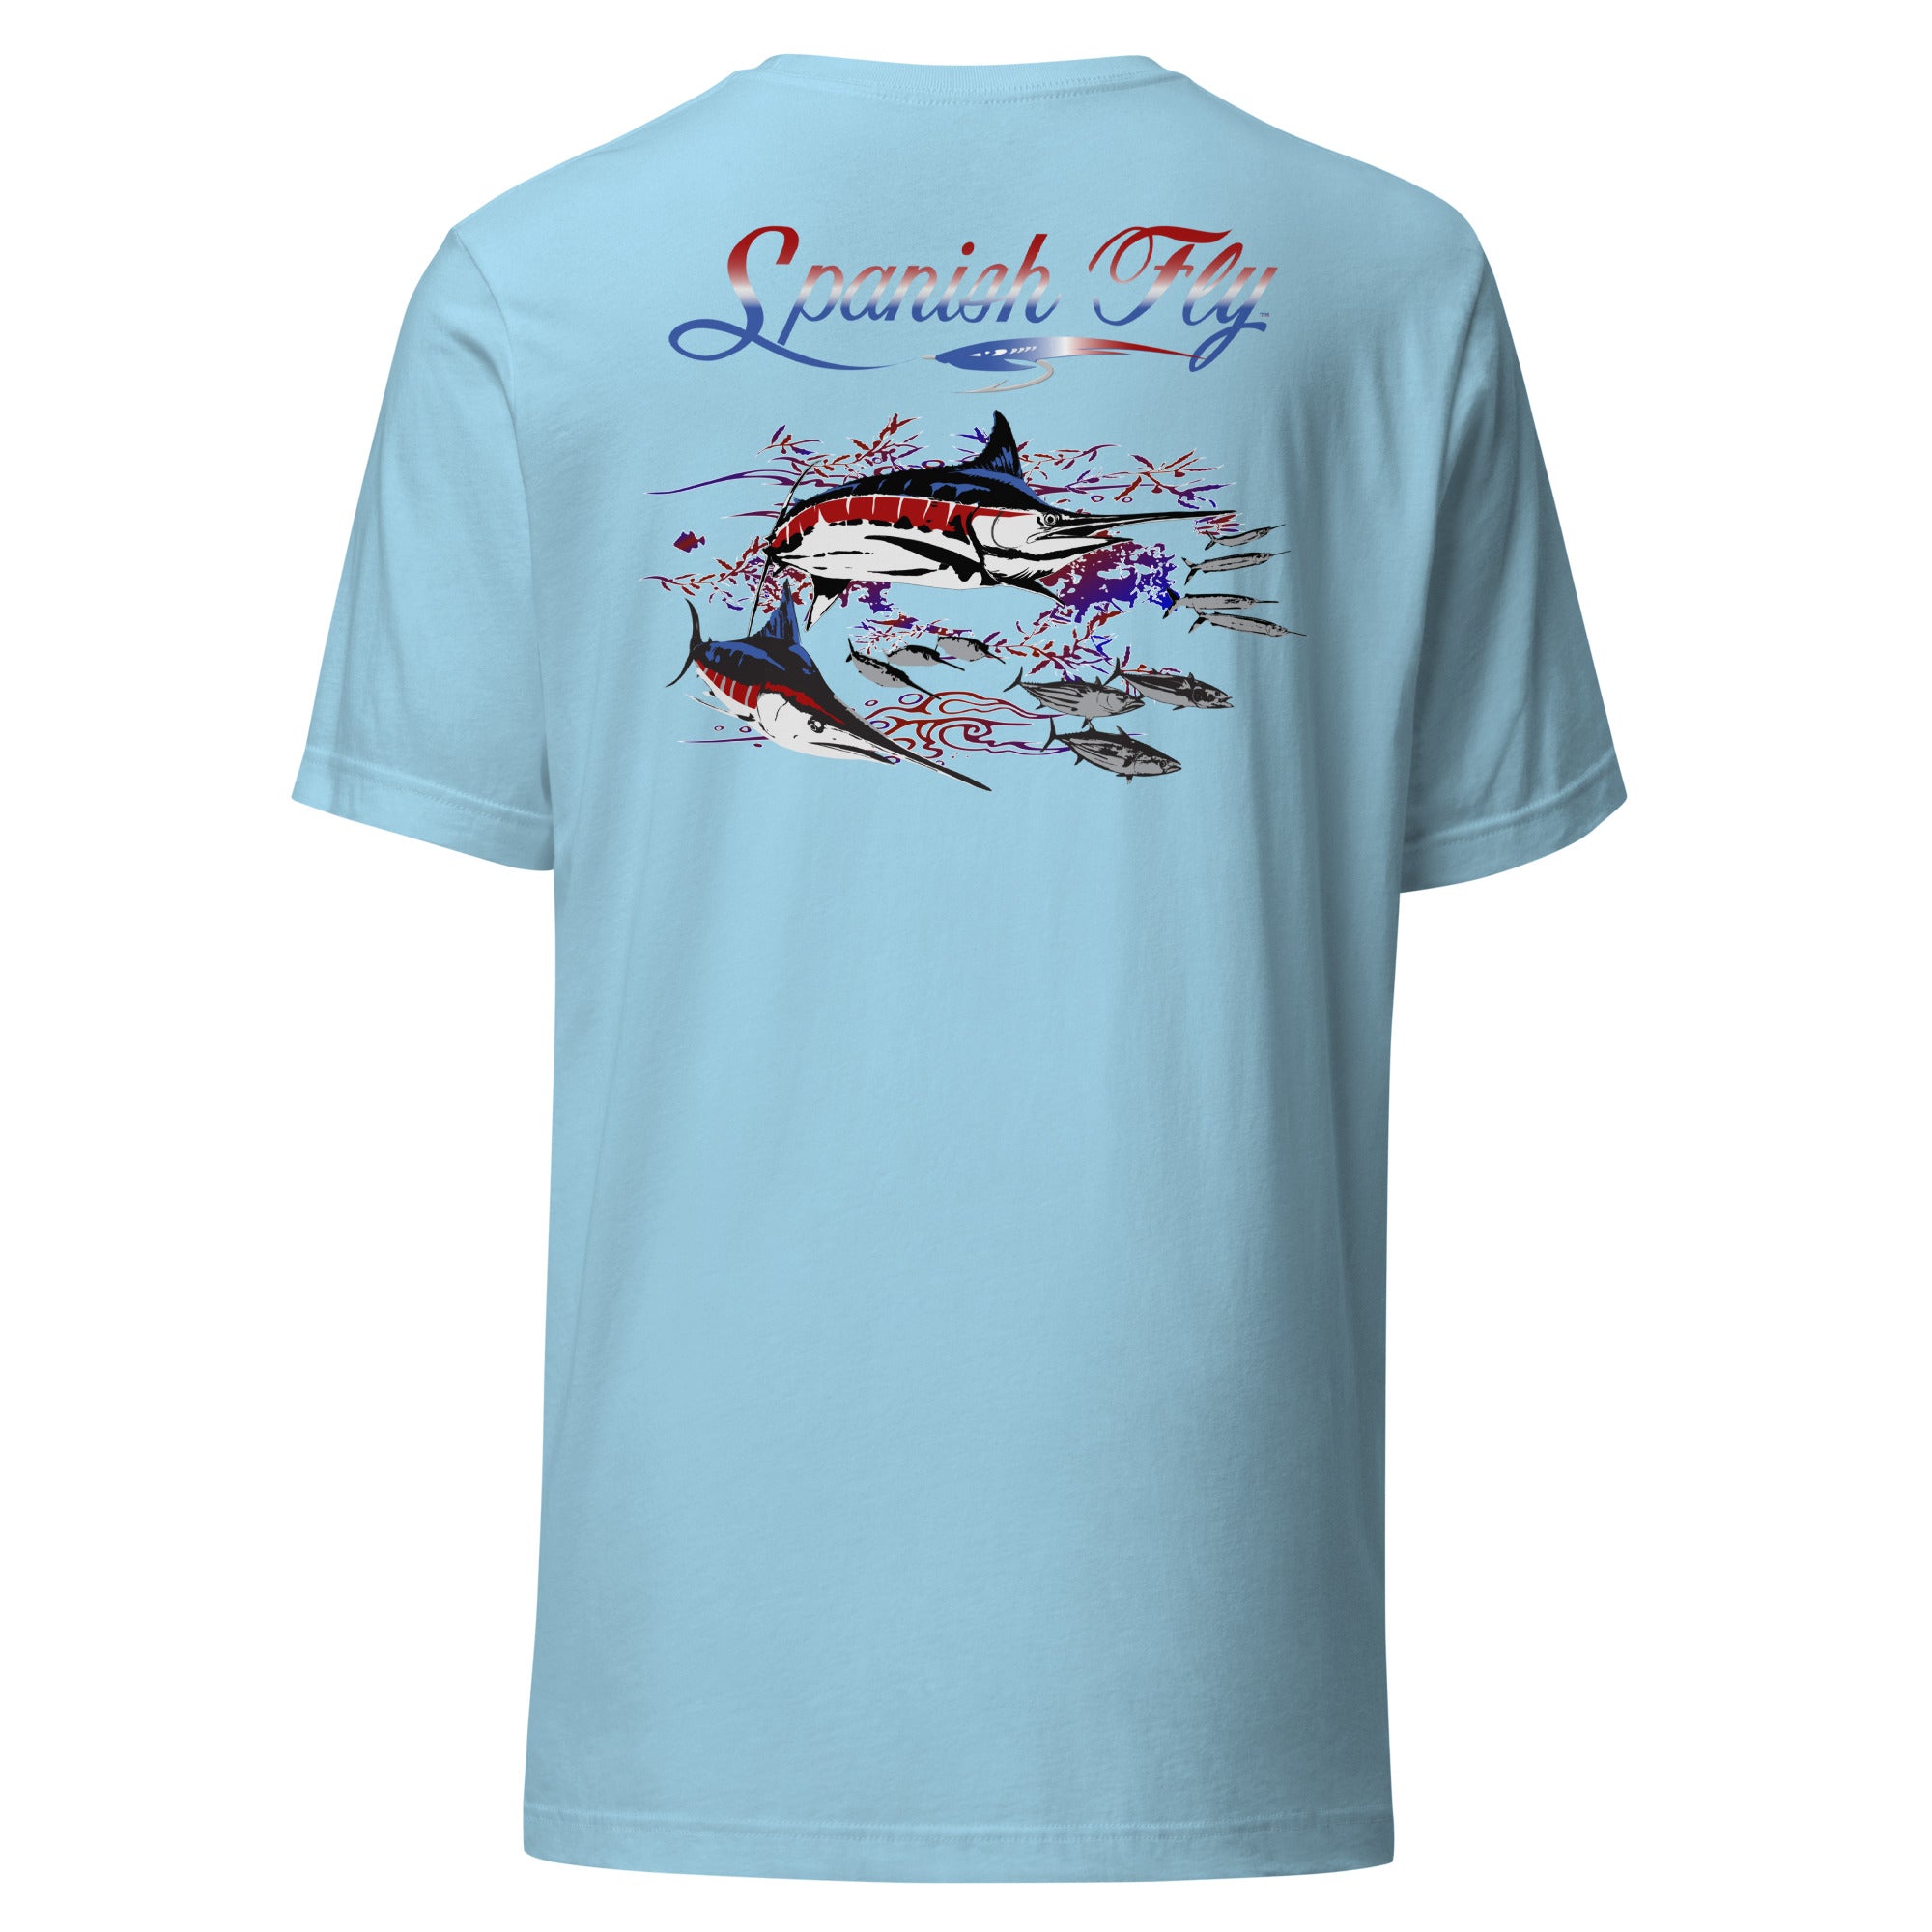 Men's All American Marlin T-Shirt